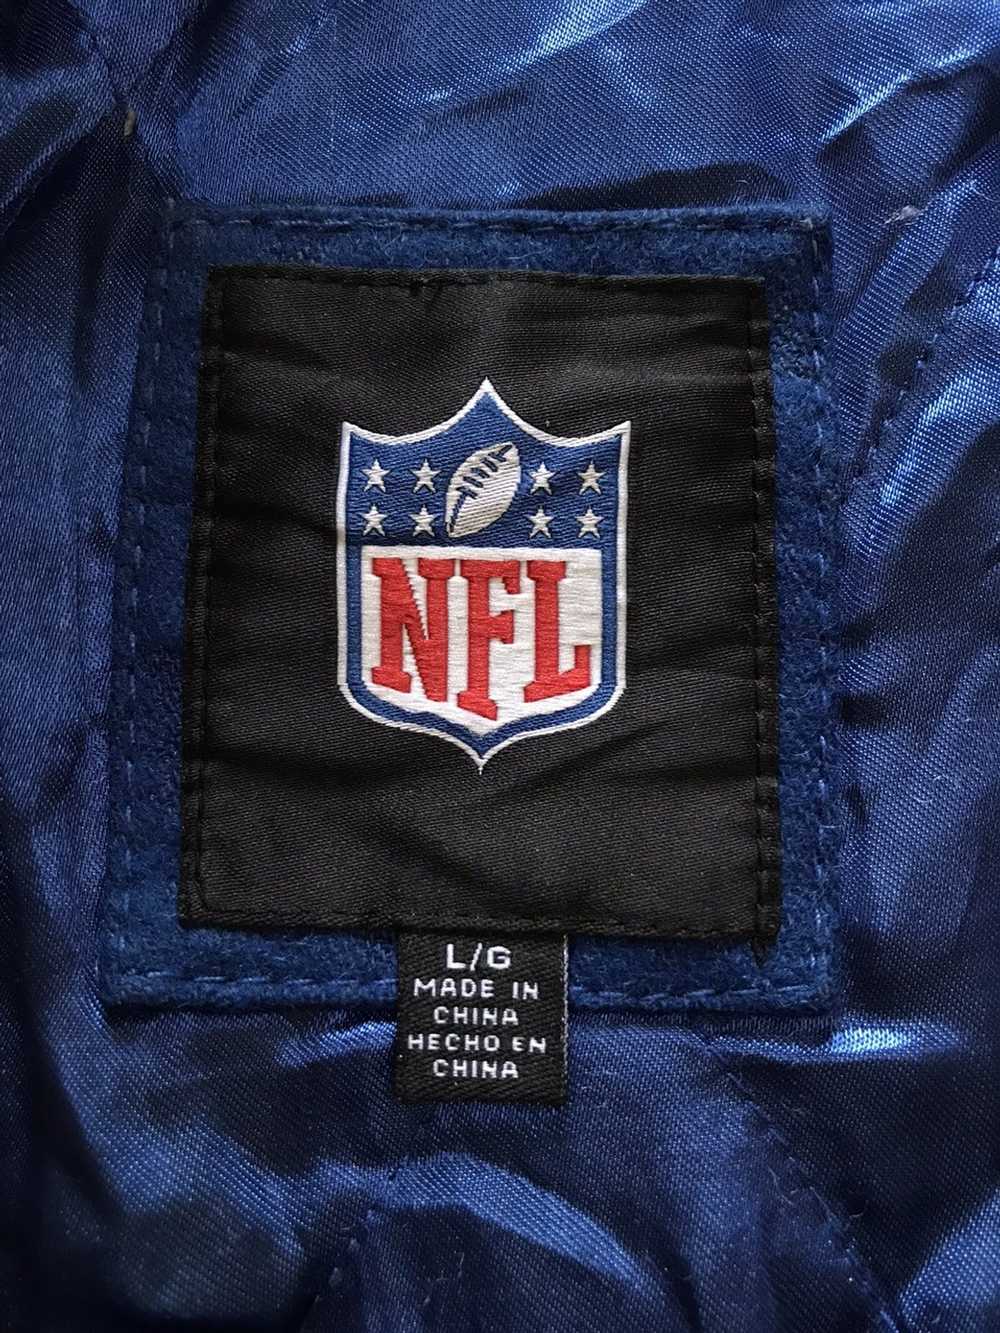 NFL × Vintage Vtg Super Bowl Champions Leather Sl… - image 4